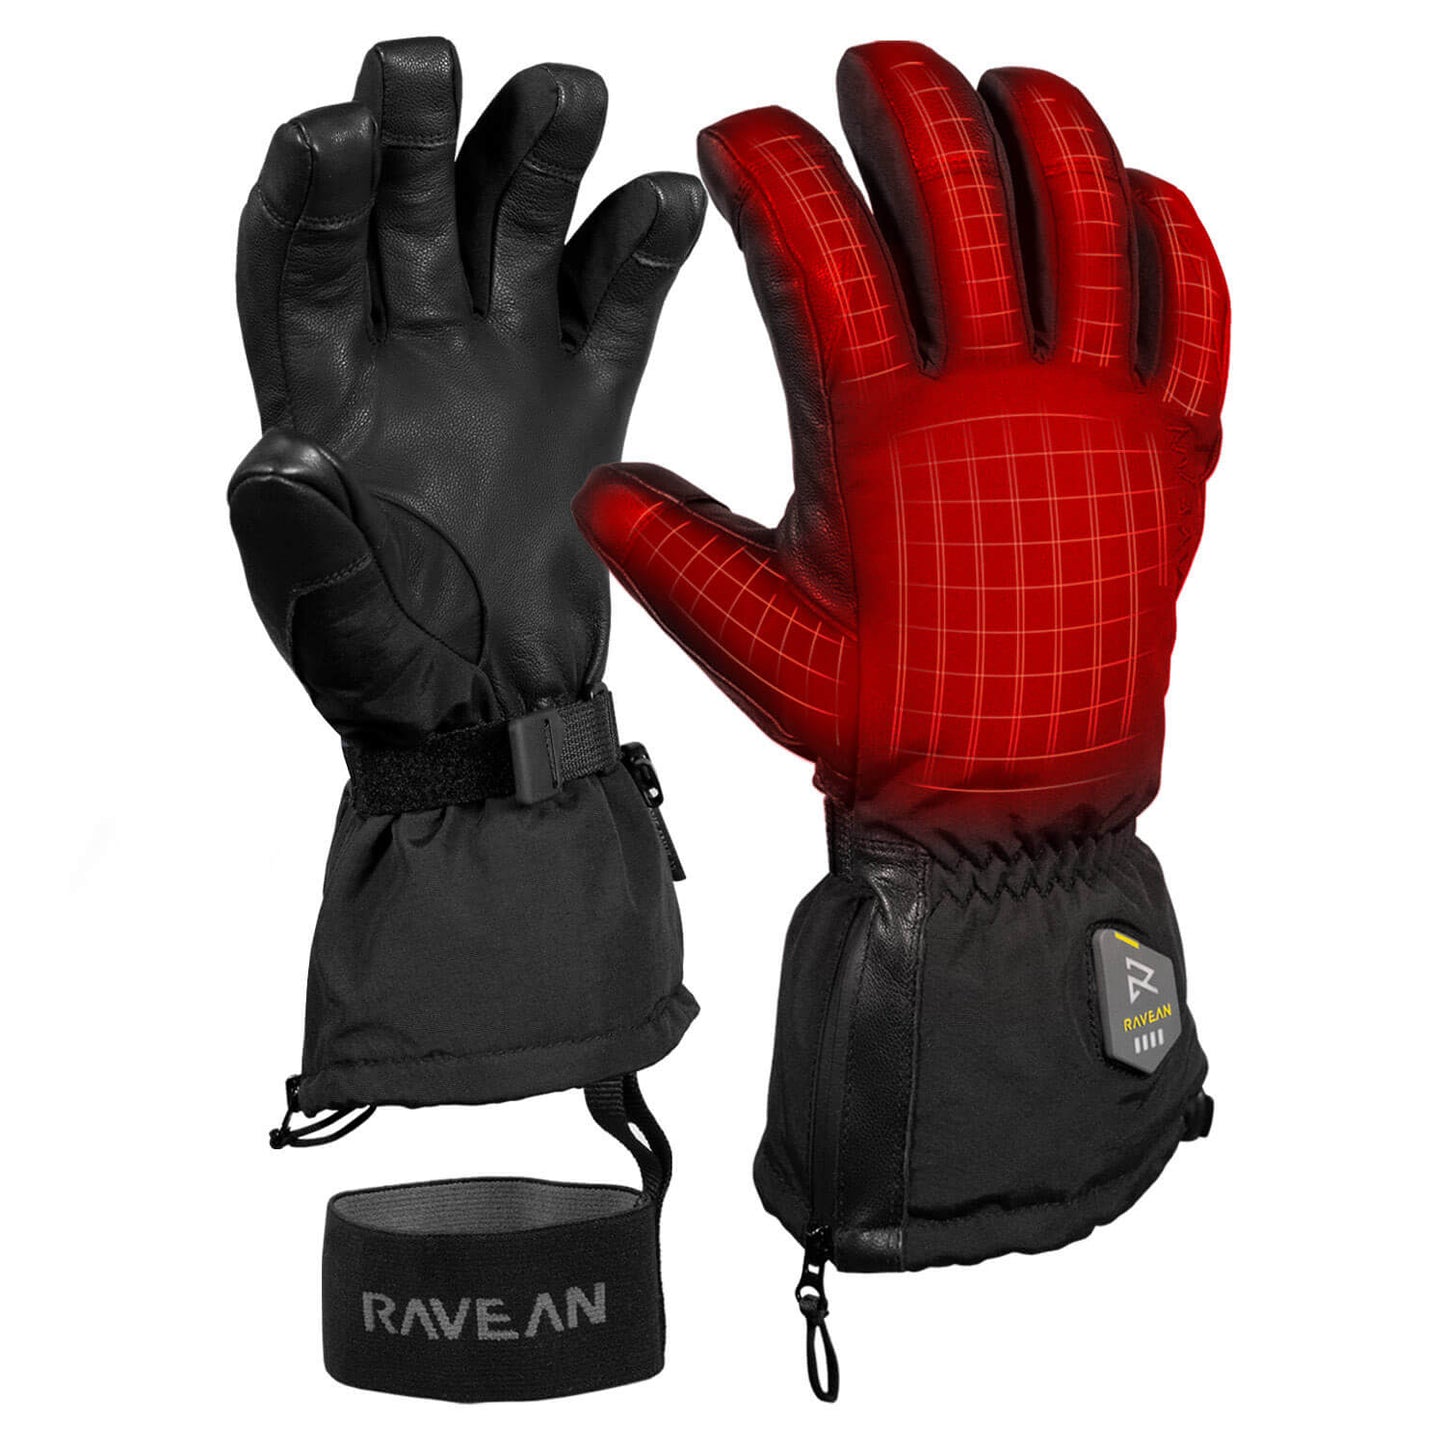 Glove / 8 / LIKE NEW